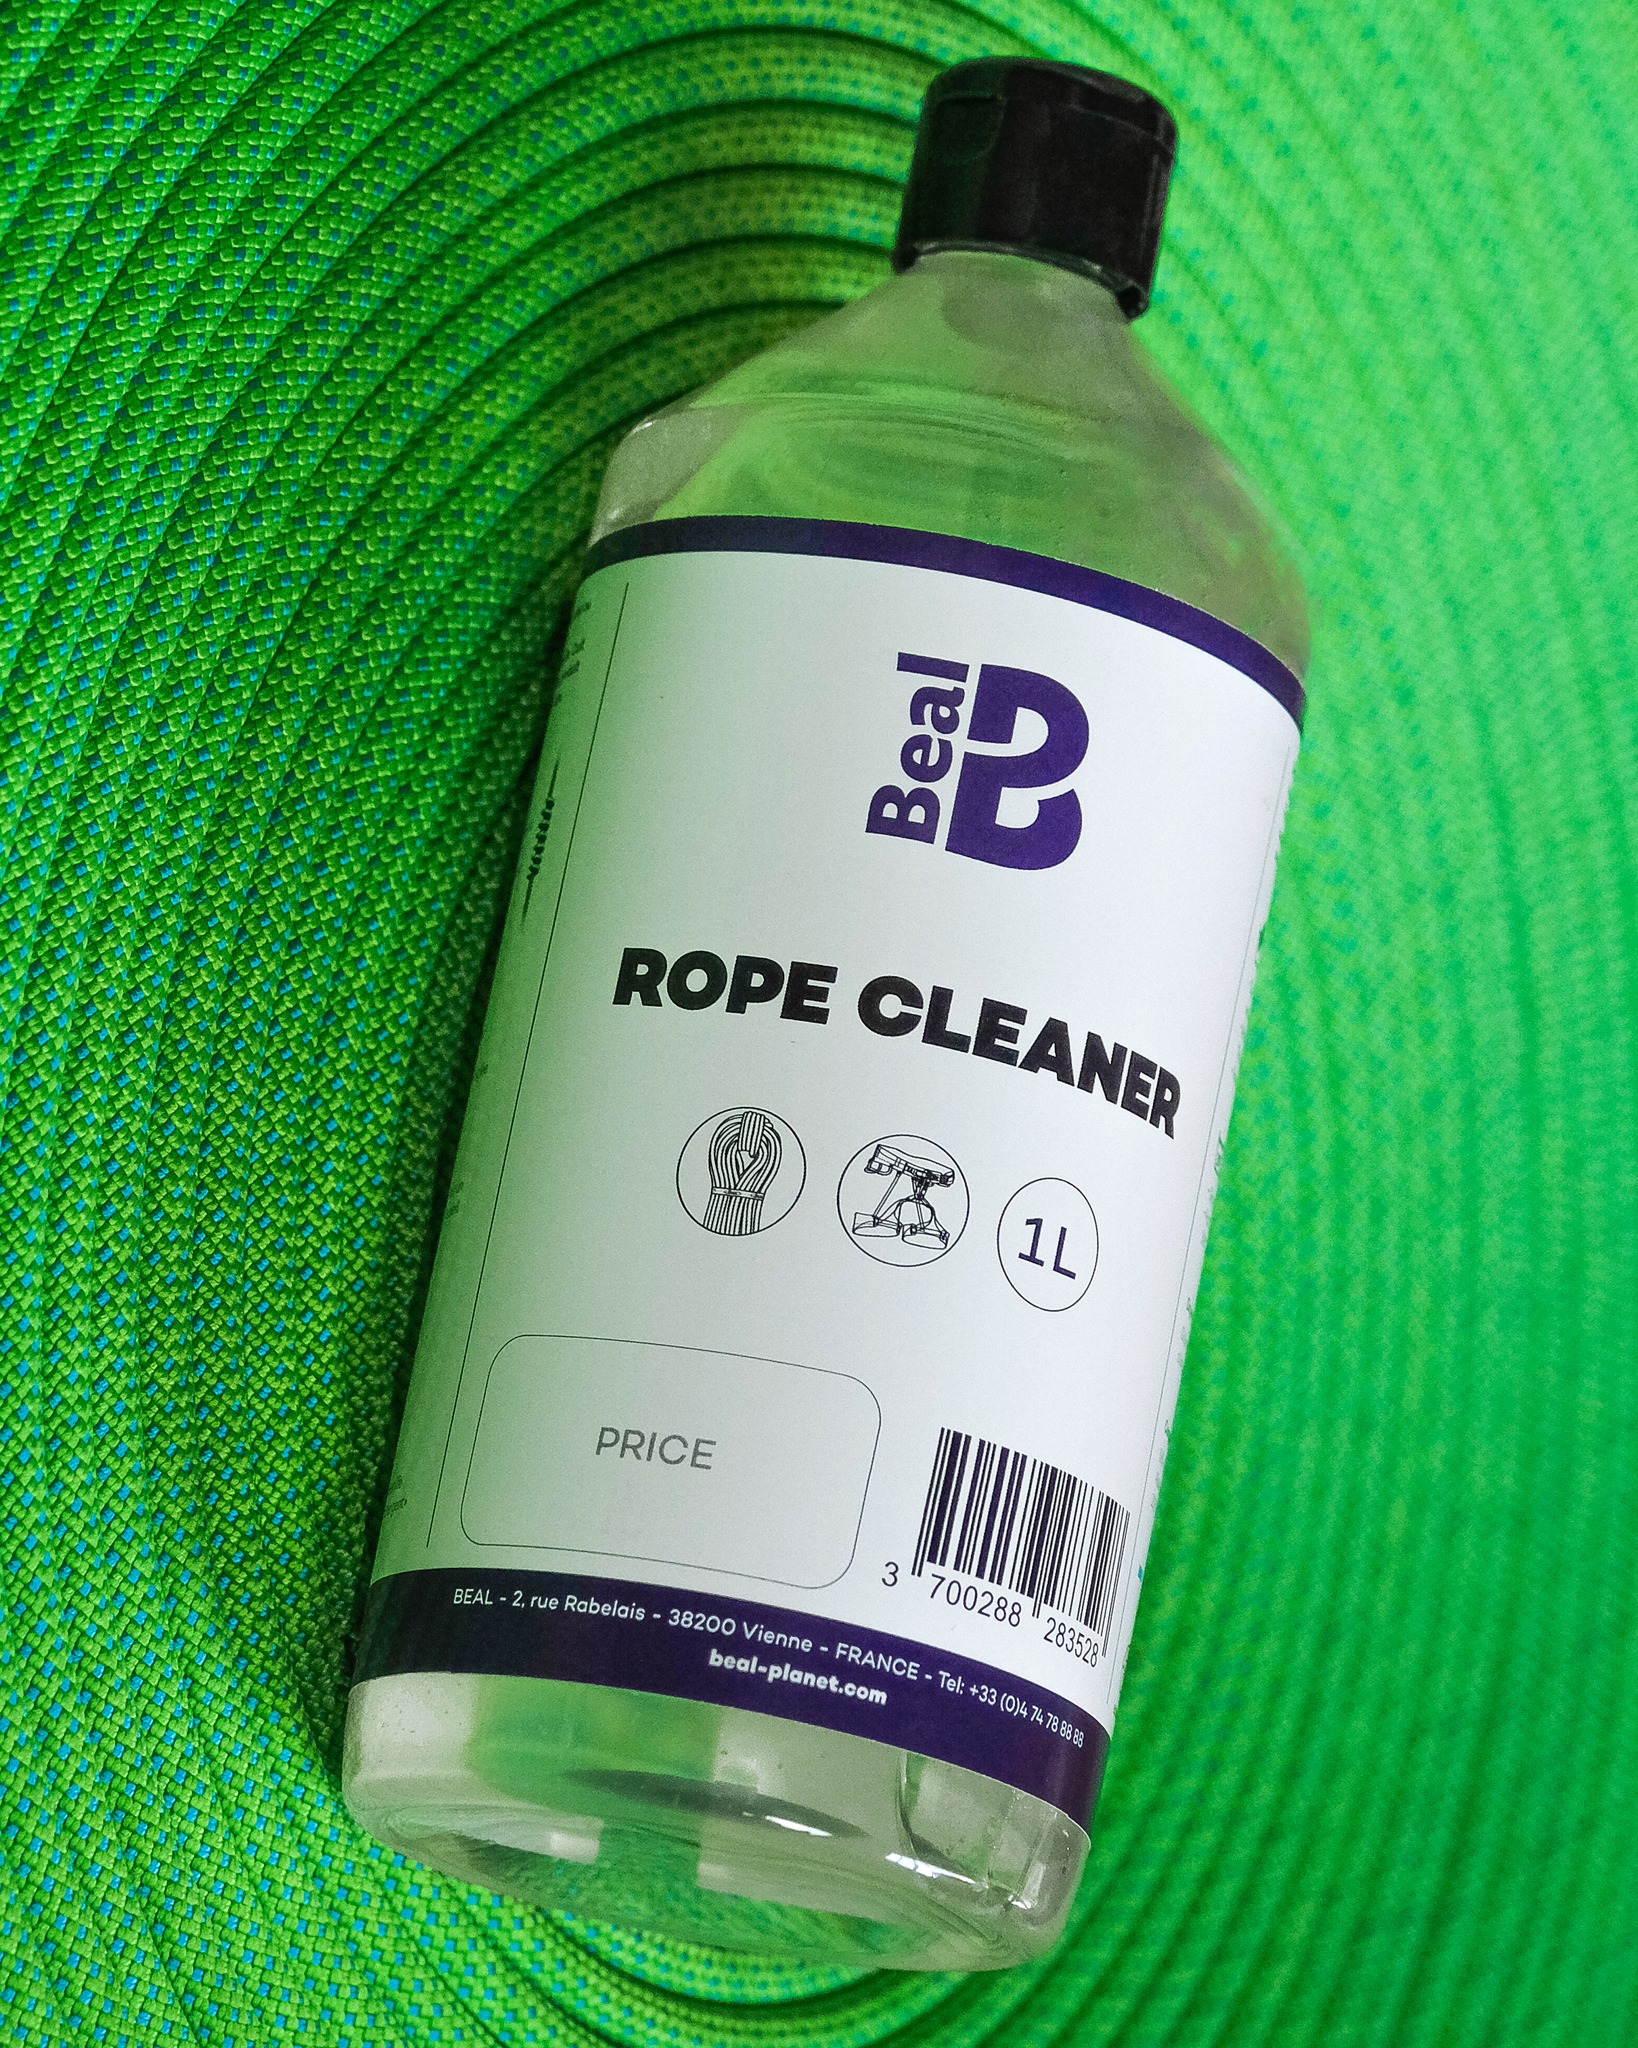 Our new ROPE CLEANER:

- Is our non-aggressive eco-detergent certified by Ecocert*
- You can use it to clean your ropes and harness
- 100% of the ingredients are of natural origin

* Detergent certified by ECOCERT Greenlife according to the ECOCERT «Ecodetergent» standard available at : http://detergents.ecocert.com/en

--------------------------------------

Notre nouveau ROPE CLEANER :

- C’est notre éco-détergent non agressif certifié par Ecocert*
- Il sert à nettoyer vos cordes et votre harnais
- 100% des ingrédients sont origine naturelle

* Détergent certifié par ECOCERT Greenlife selon le référentiel ECOCERT «Ecodétergent» disponible sur : http://detergents.ecocert.com